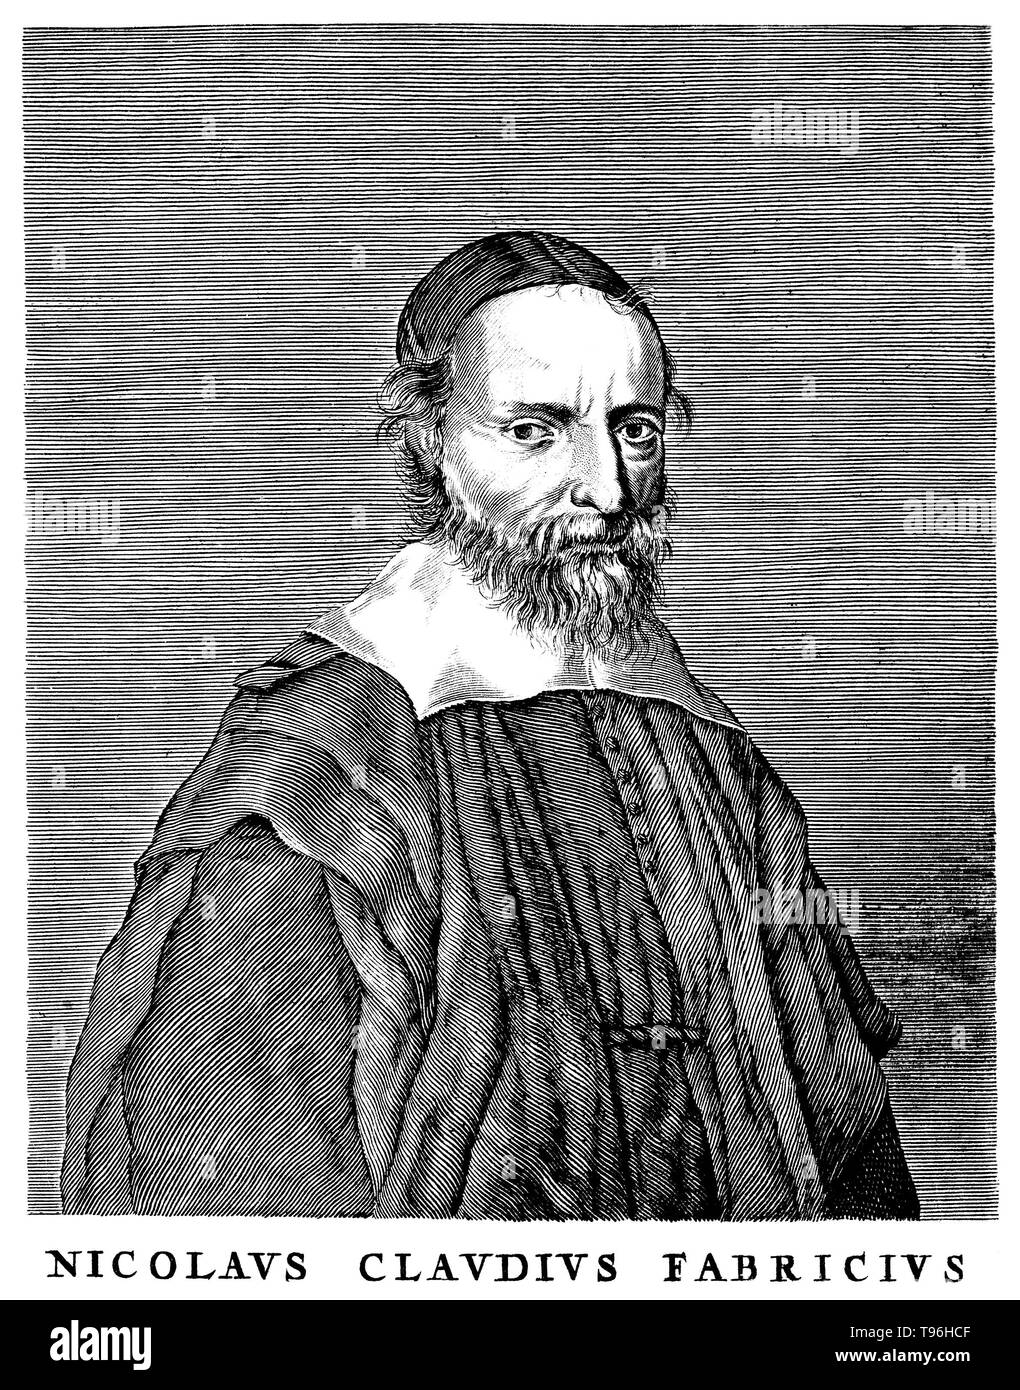 Nicolas-Claude Fabri de Peiresc (Dicembre 1, 1580 - 24 giugno 1637) è stato un astronomo francese e antiquario, che hanno mantenuto una vasta corrispondenza con gli scienziati, ed è stato il successo di un organizzatore di indagine scientifica. La prima scoperta della nebulosa diffusa natura della nebulosa di Orione è generalmente accreditato a lui quando ha fatto un record di osservando il 26 novembre 1610. Egli divenne un patrono della scienza e della tecnica, ha studiato i fossili, e sostenuto l'astronomo Pierre Gassendi dal 1634 al 1637. Foto Stock